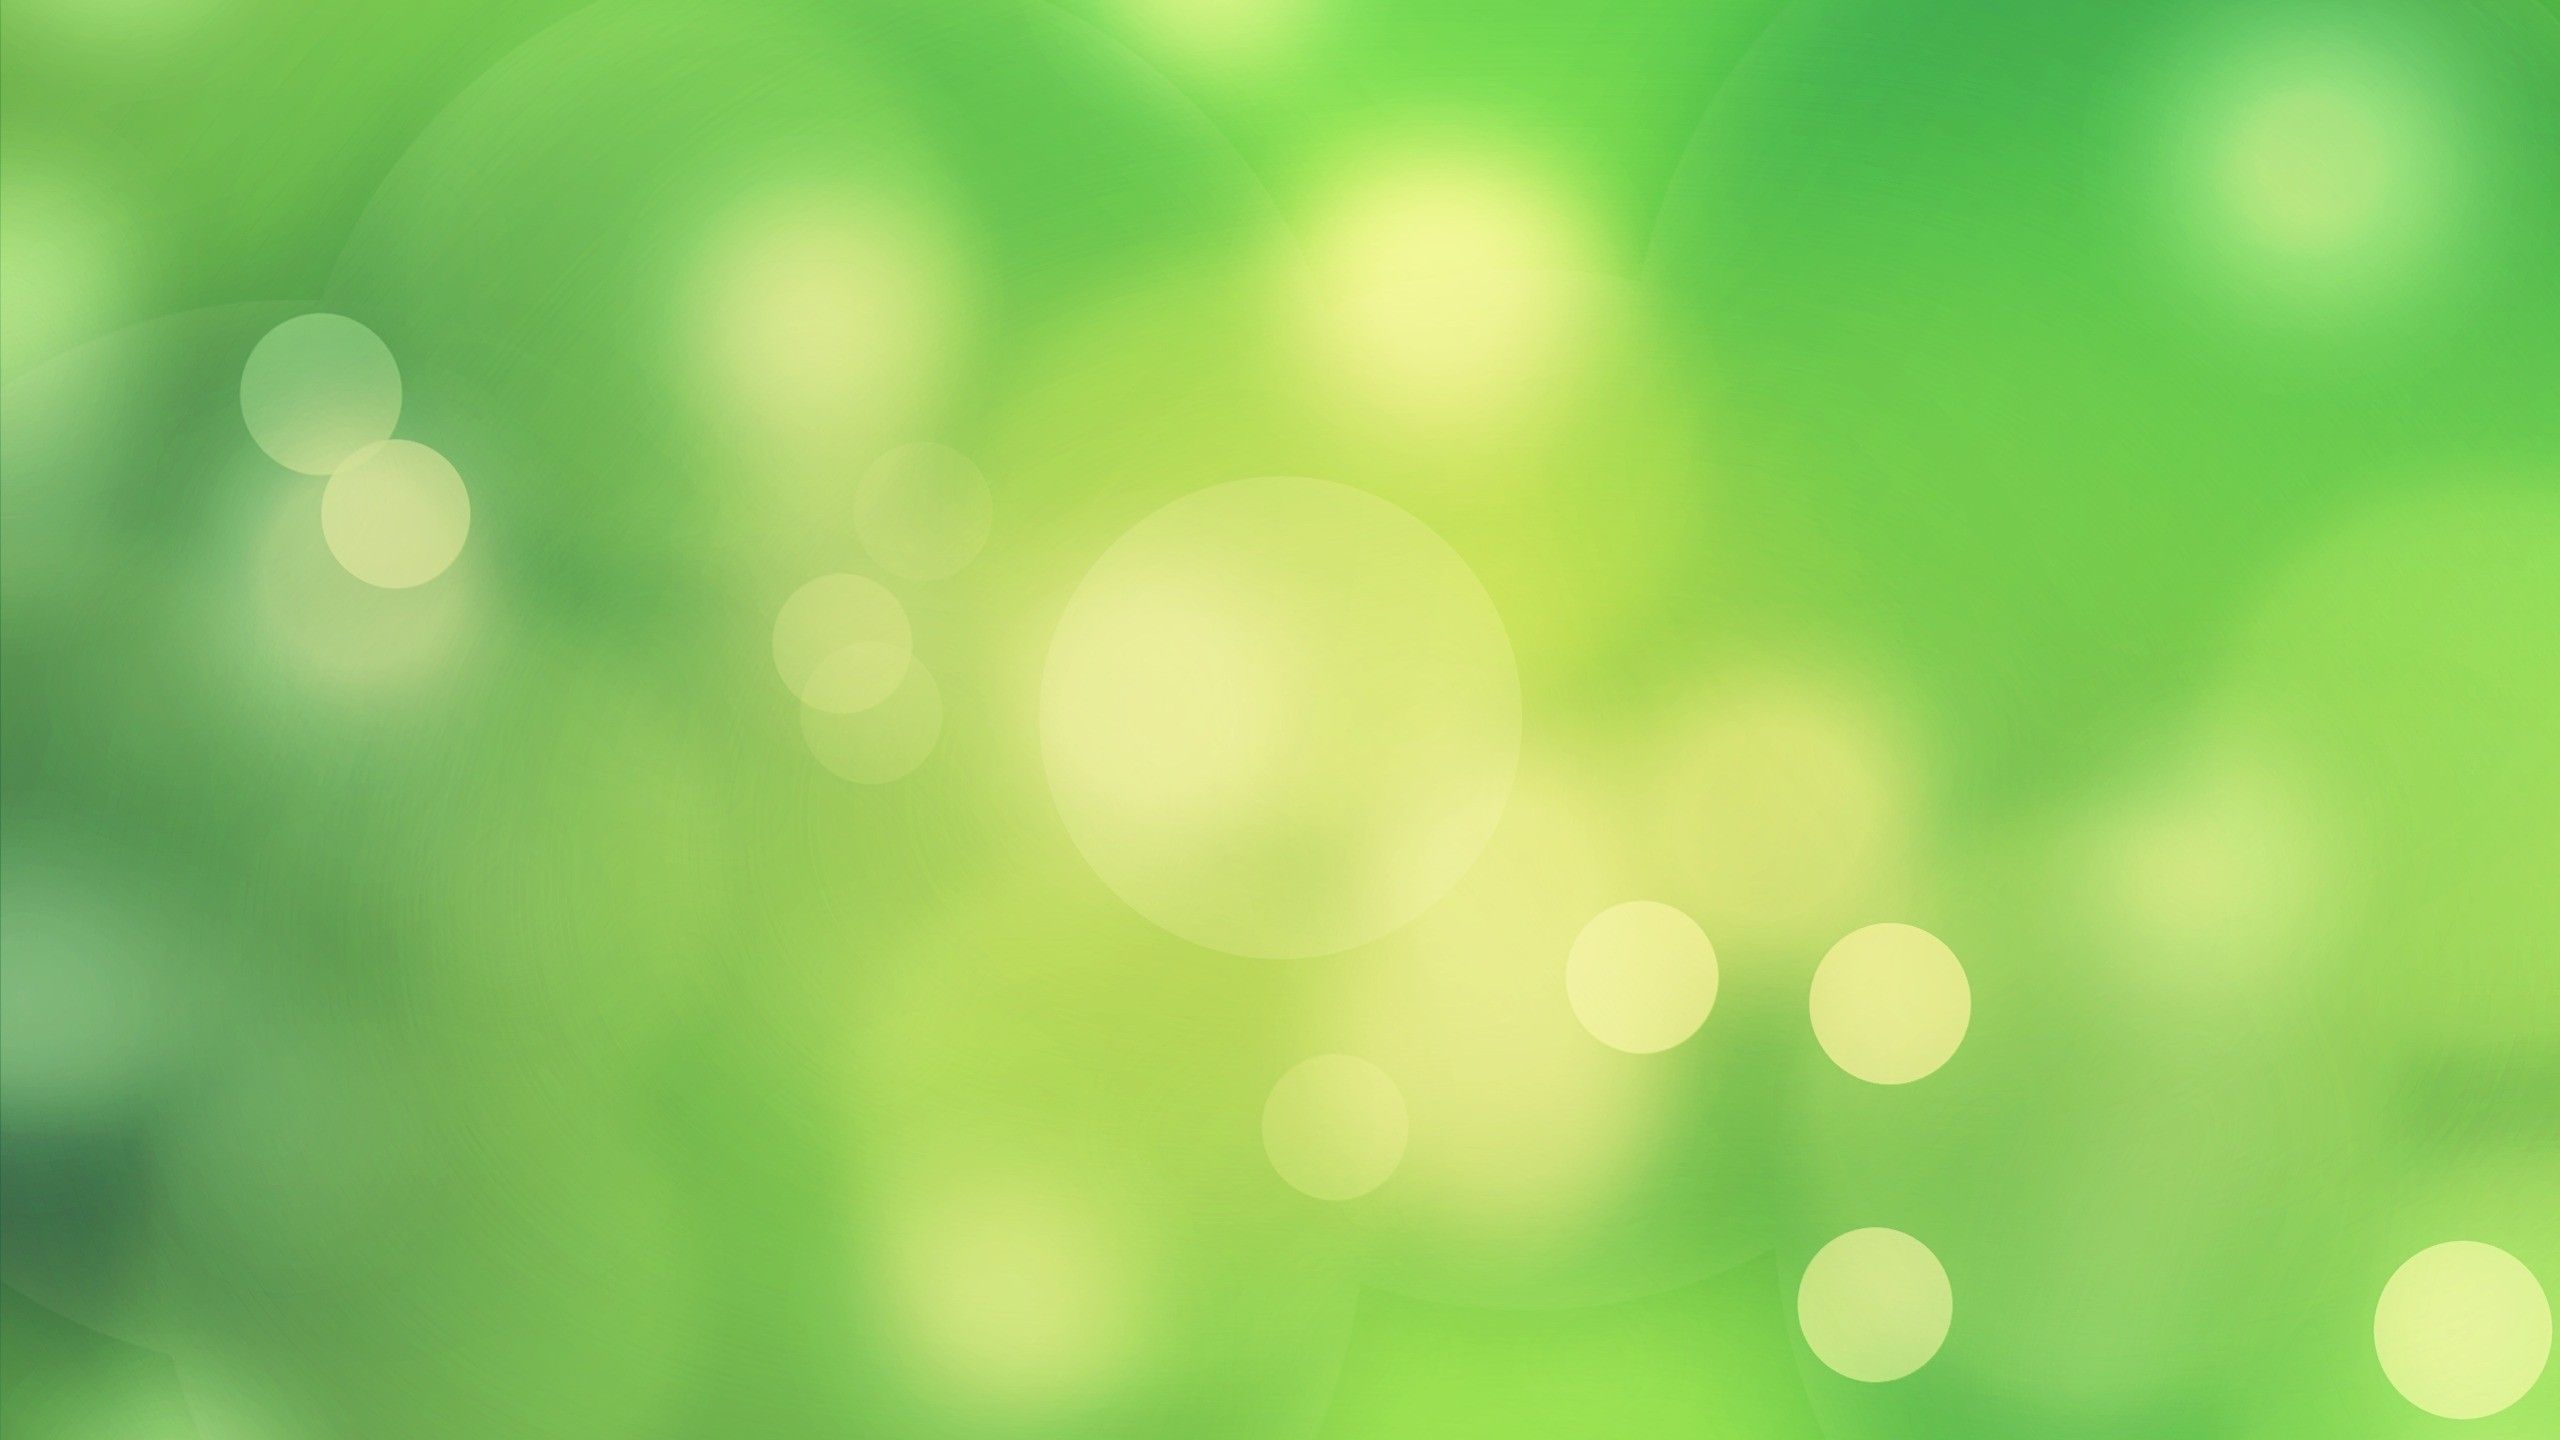 Hình nền màu xanh nhạt (Light green wallpaper): Lạc vào một thế giới màu sắc êm dịu với hình nền màu xanh nhạt đẹp mắt này. Cùng bắt đầu một ngày mới với năng lượng và sự cảm hứng mới. Hình nền màu xanh nhạt sẽ mang đến sự thanh lọc tinh thần và giúp bạn cảm thấy thoải mái trong không gian làm việc hay học tập.